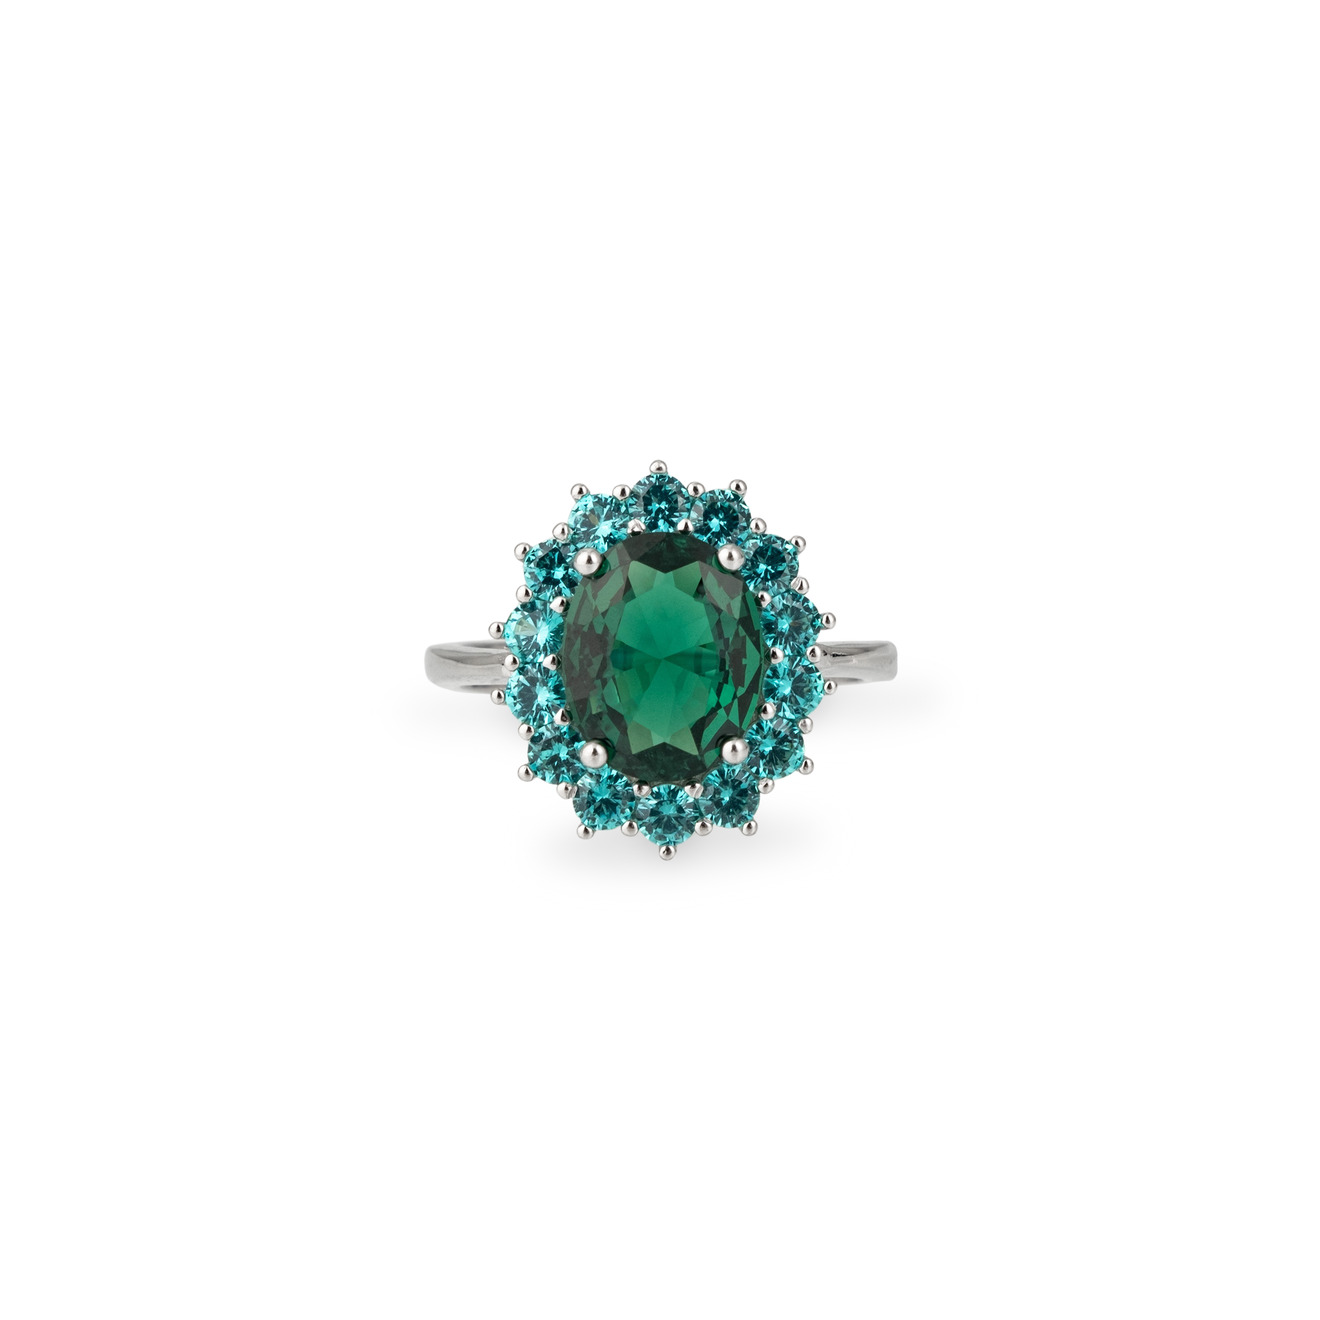 Holy Silver Серебряное кольцо с крупным зеленым кристаллом holy silver серебряное кольцо с зеленым кристаллом и паве из белых кристаллов